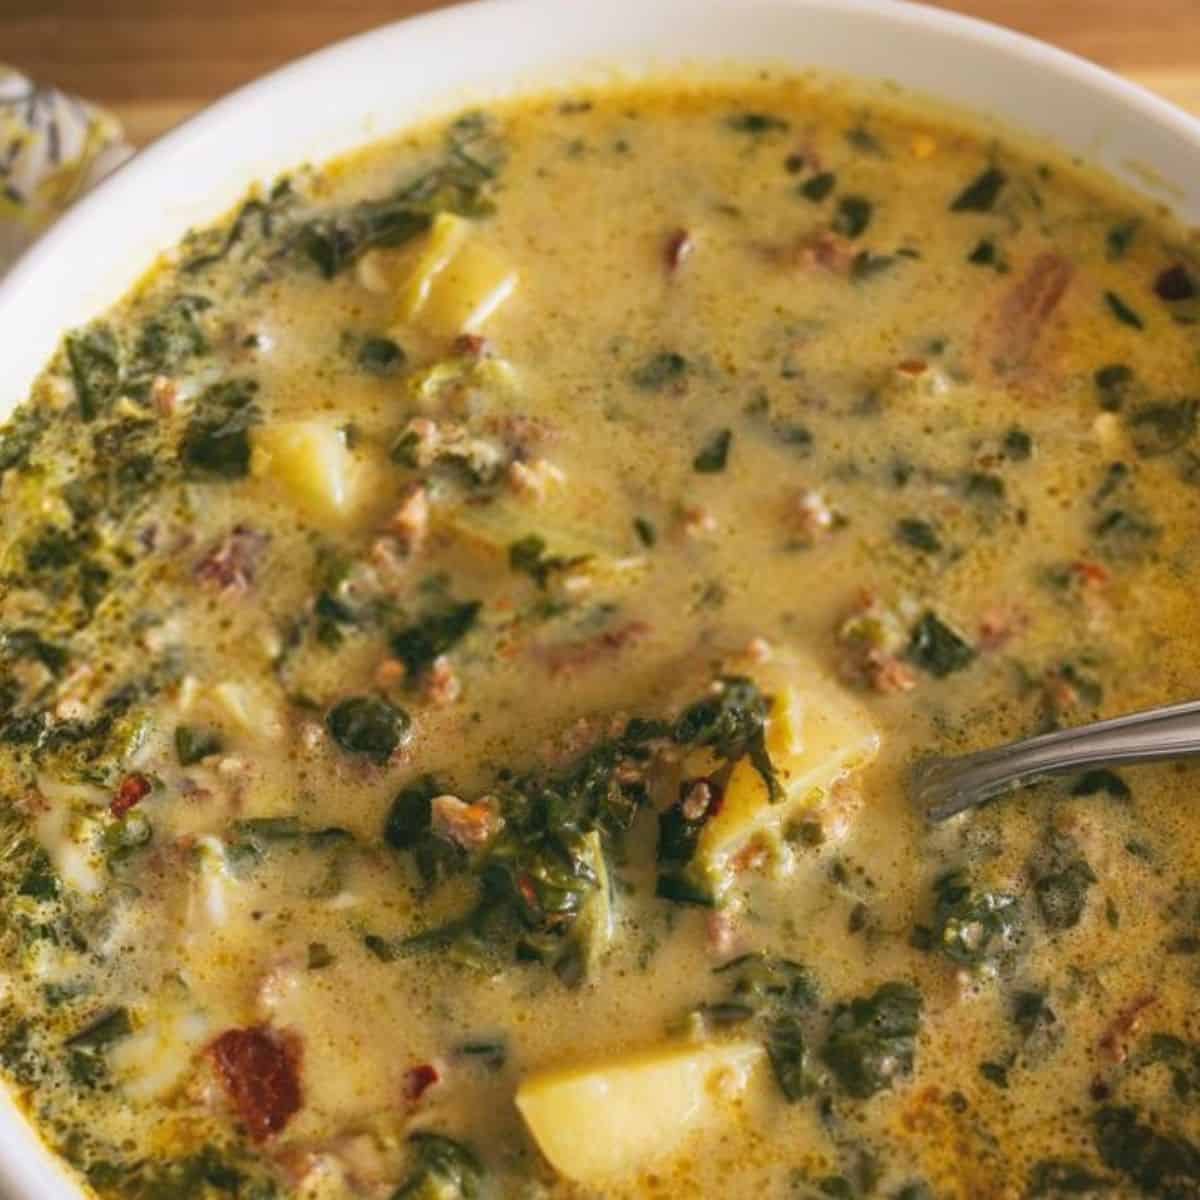 Olive Garden Zuppa Toscana Soup Recipe » Recipefairy.com